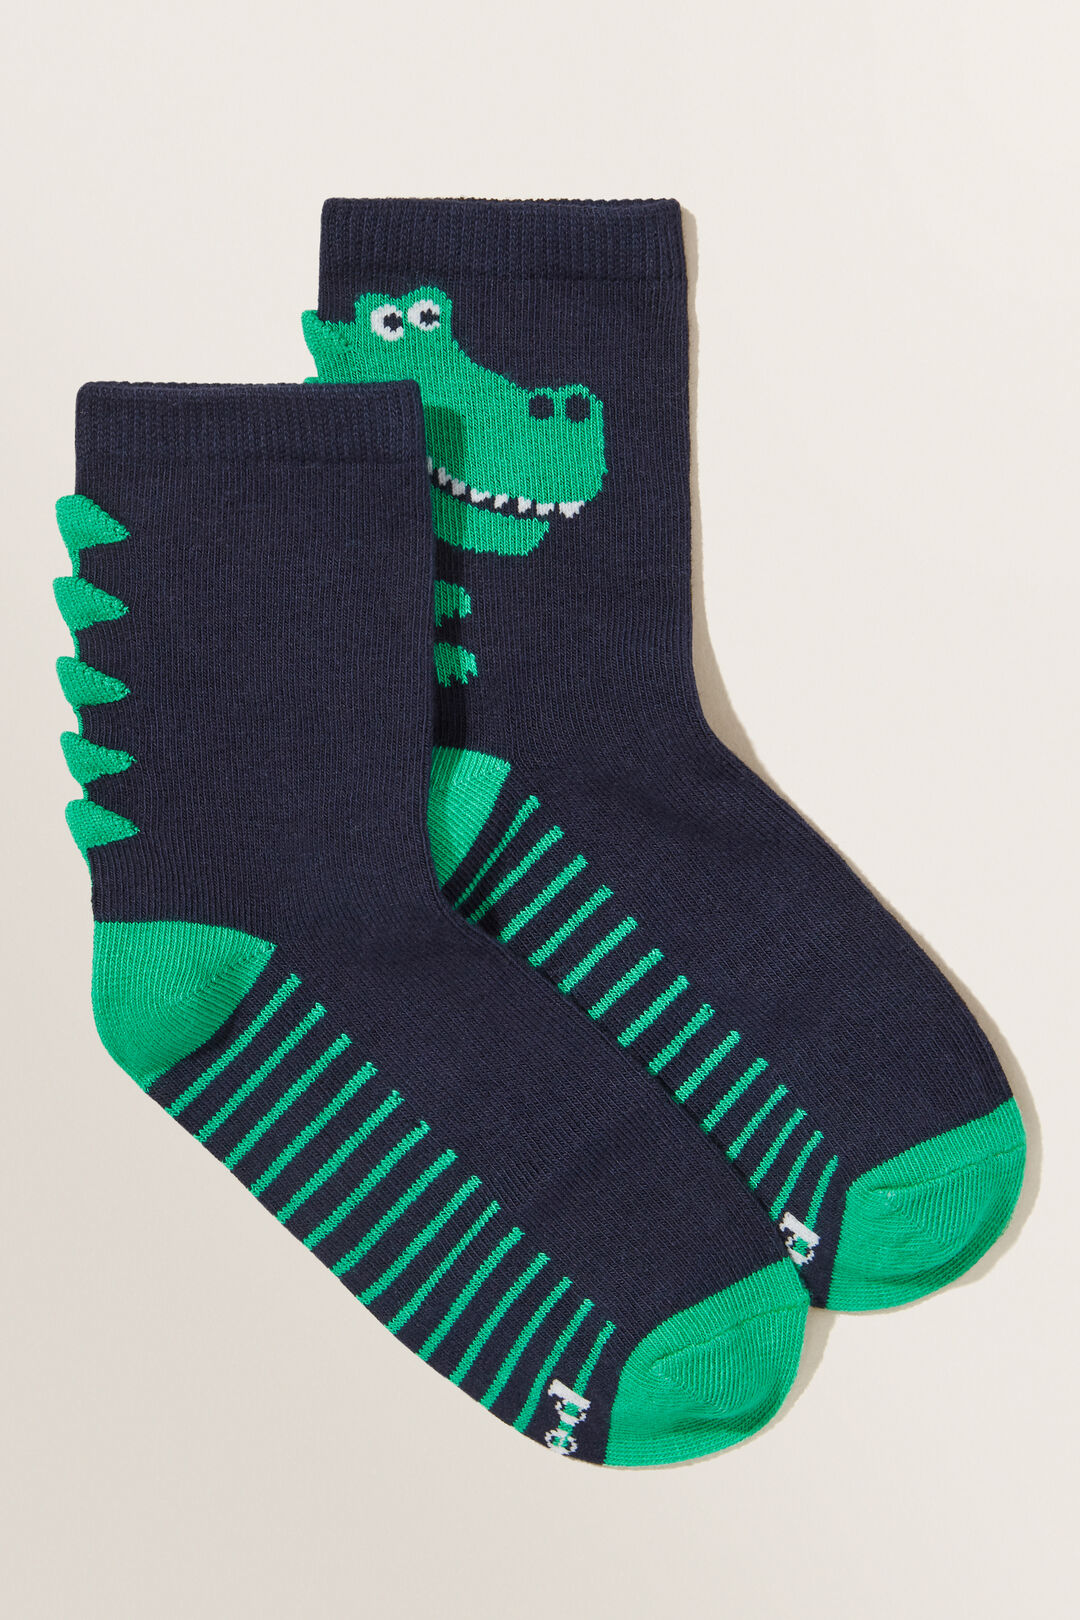 Dino Socks | Seed Heritage